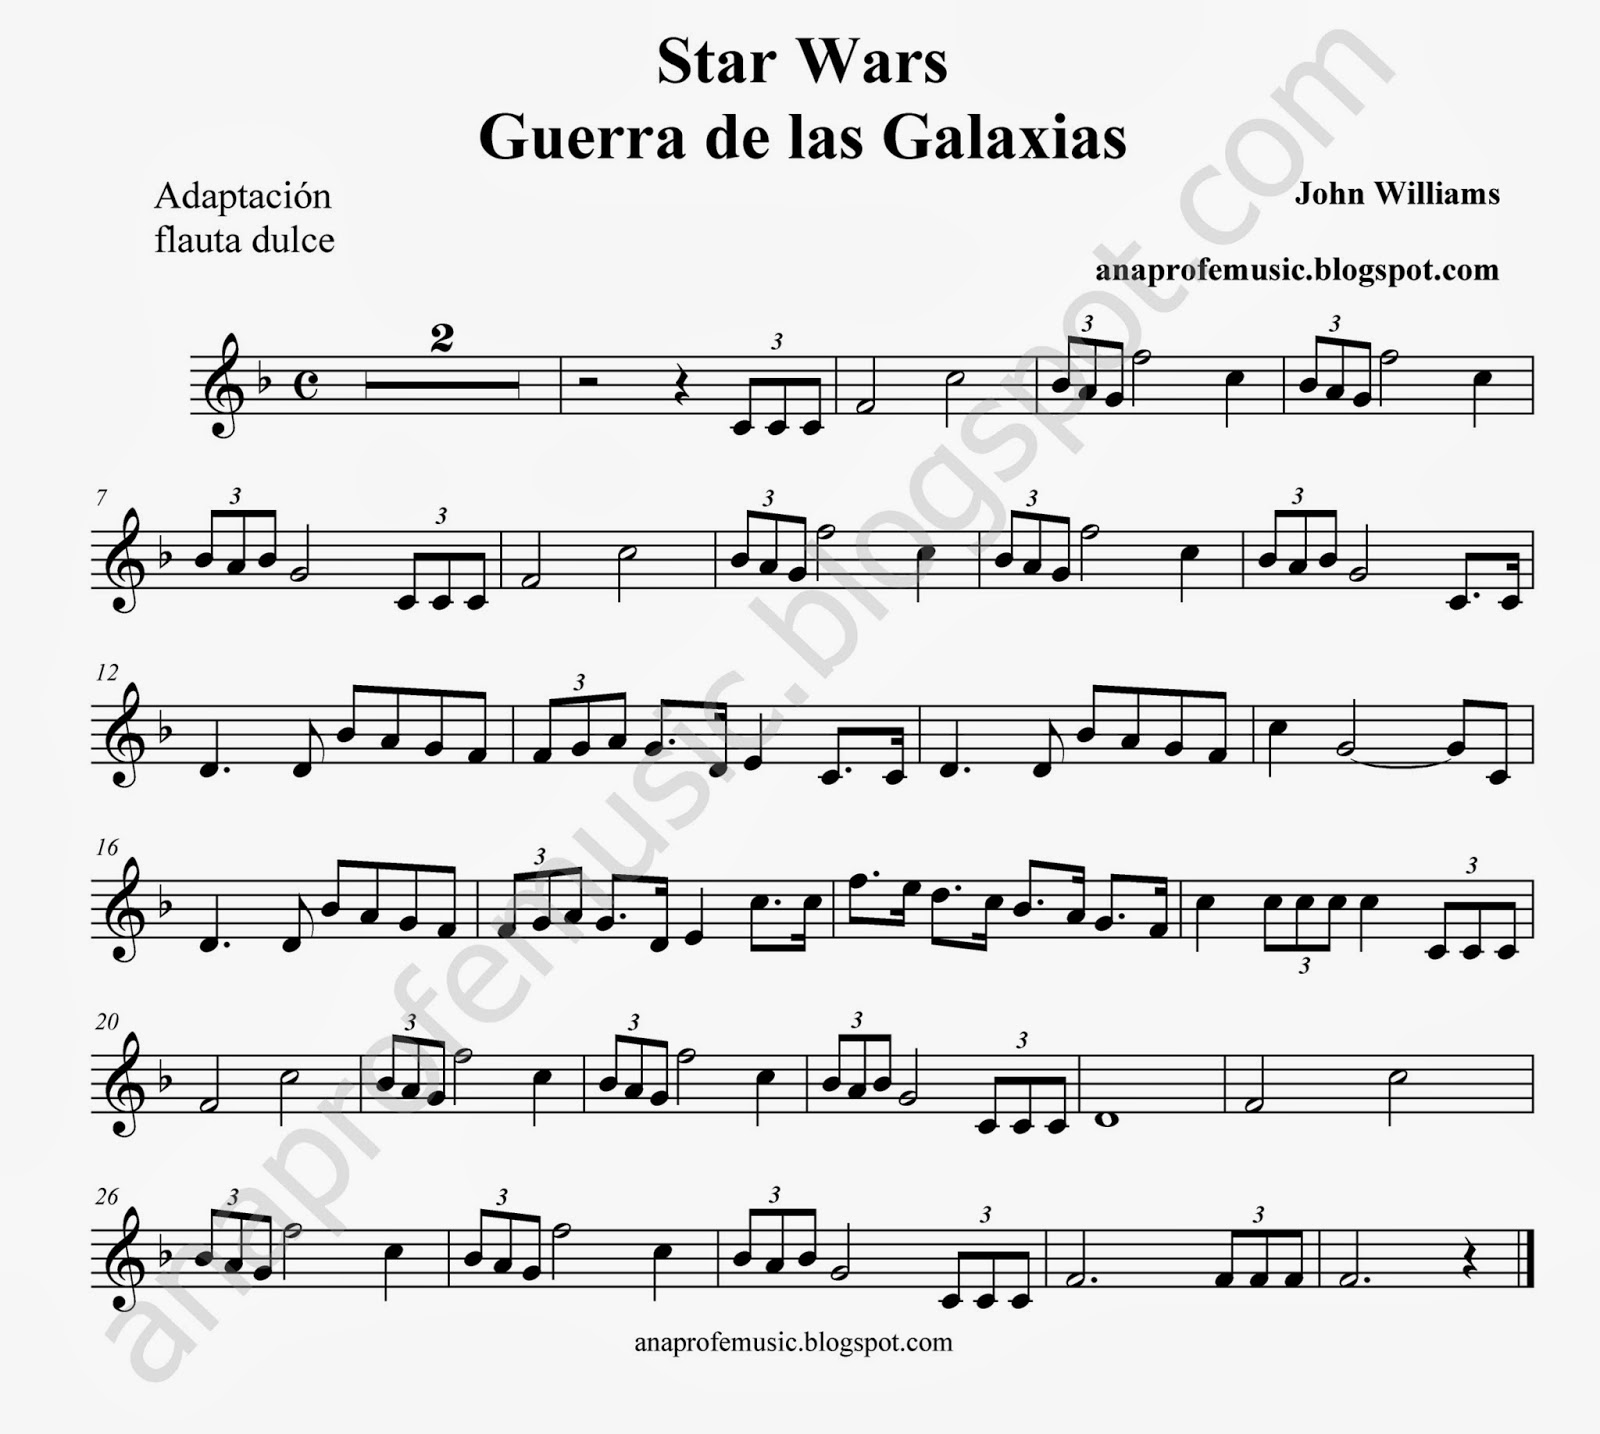 Anaprofemusic Partitura Banda Sonora Guerra De Las Galaxias